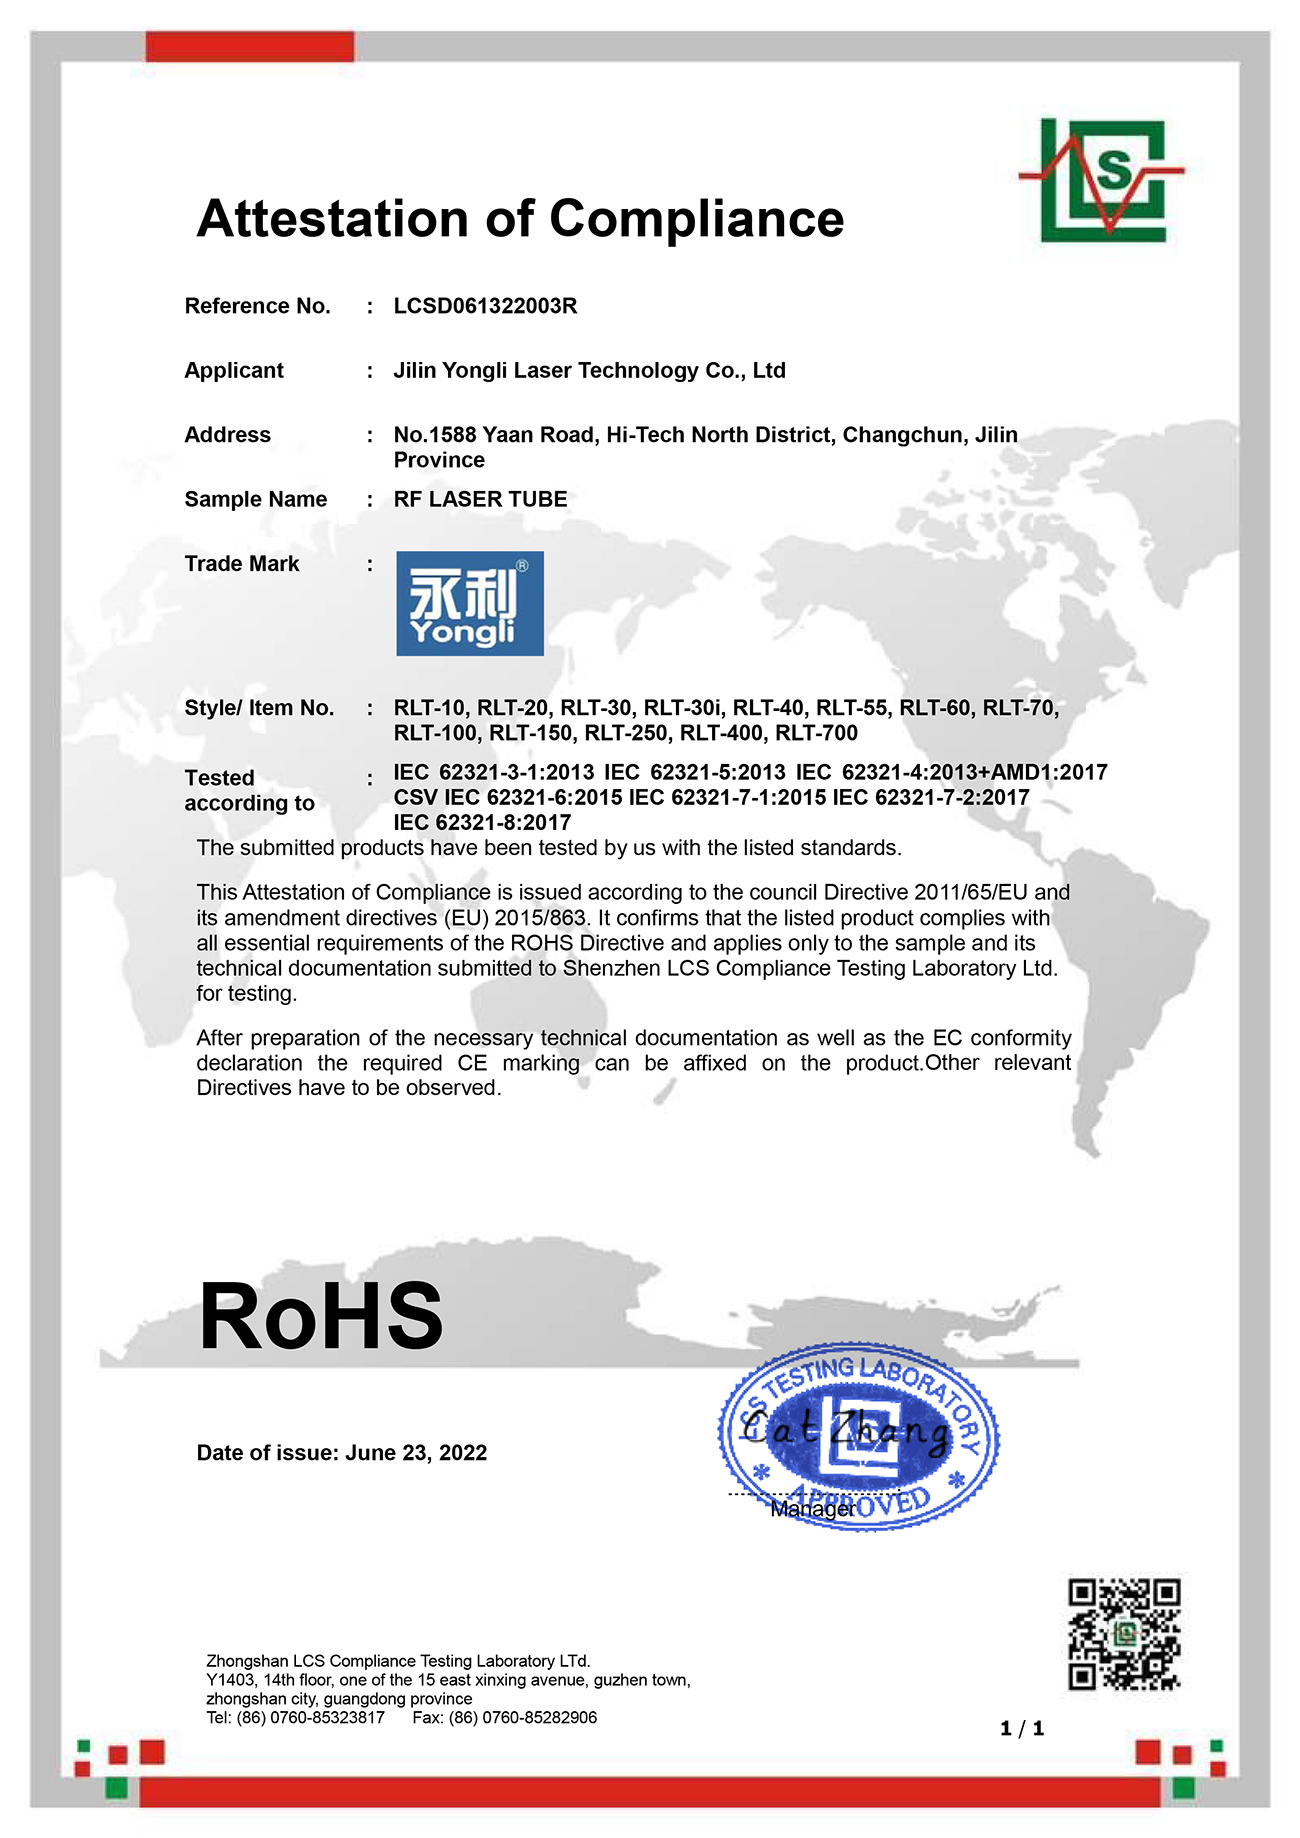 射频激光器 ROHS 证书.jpg